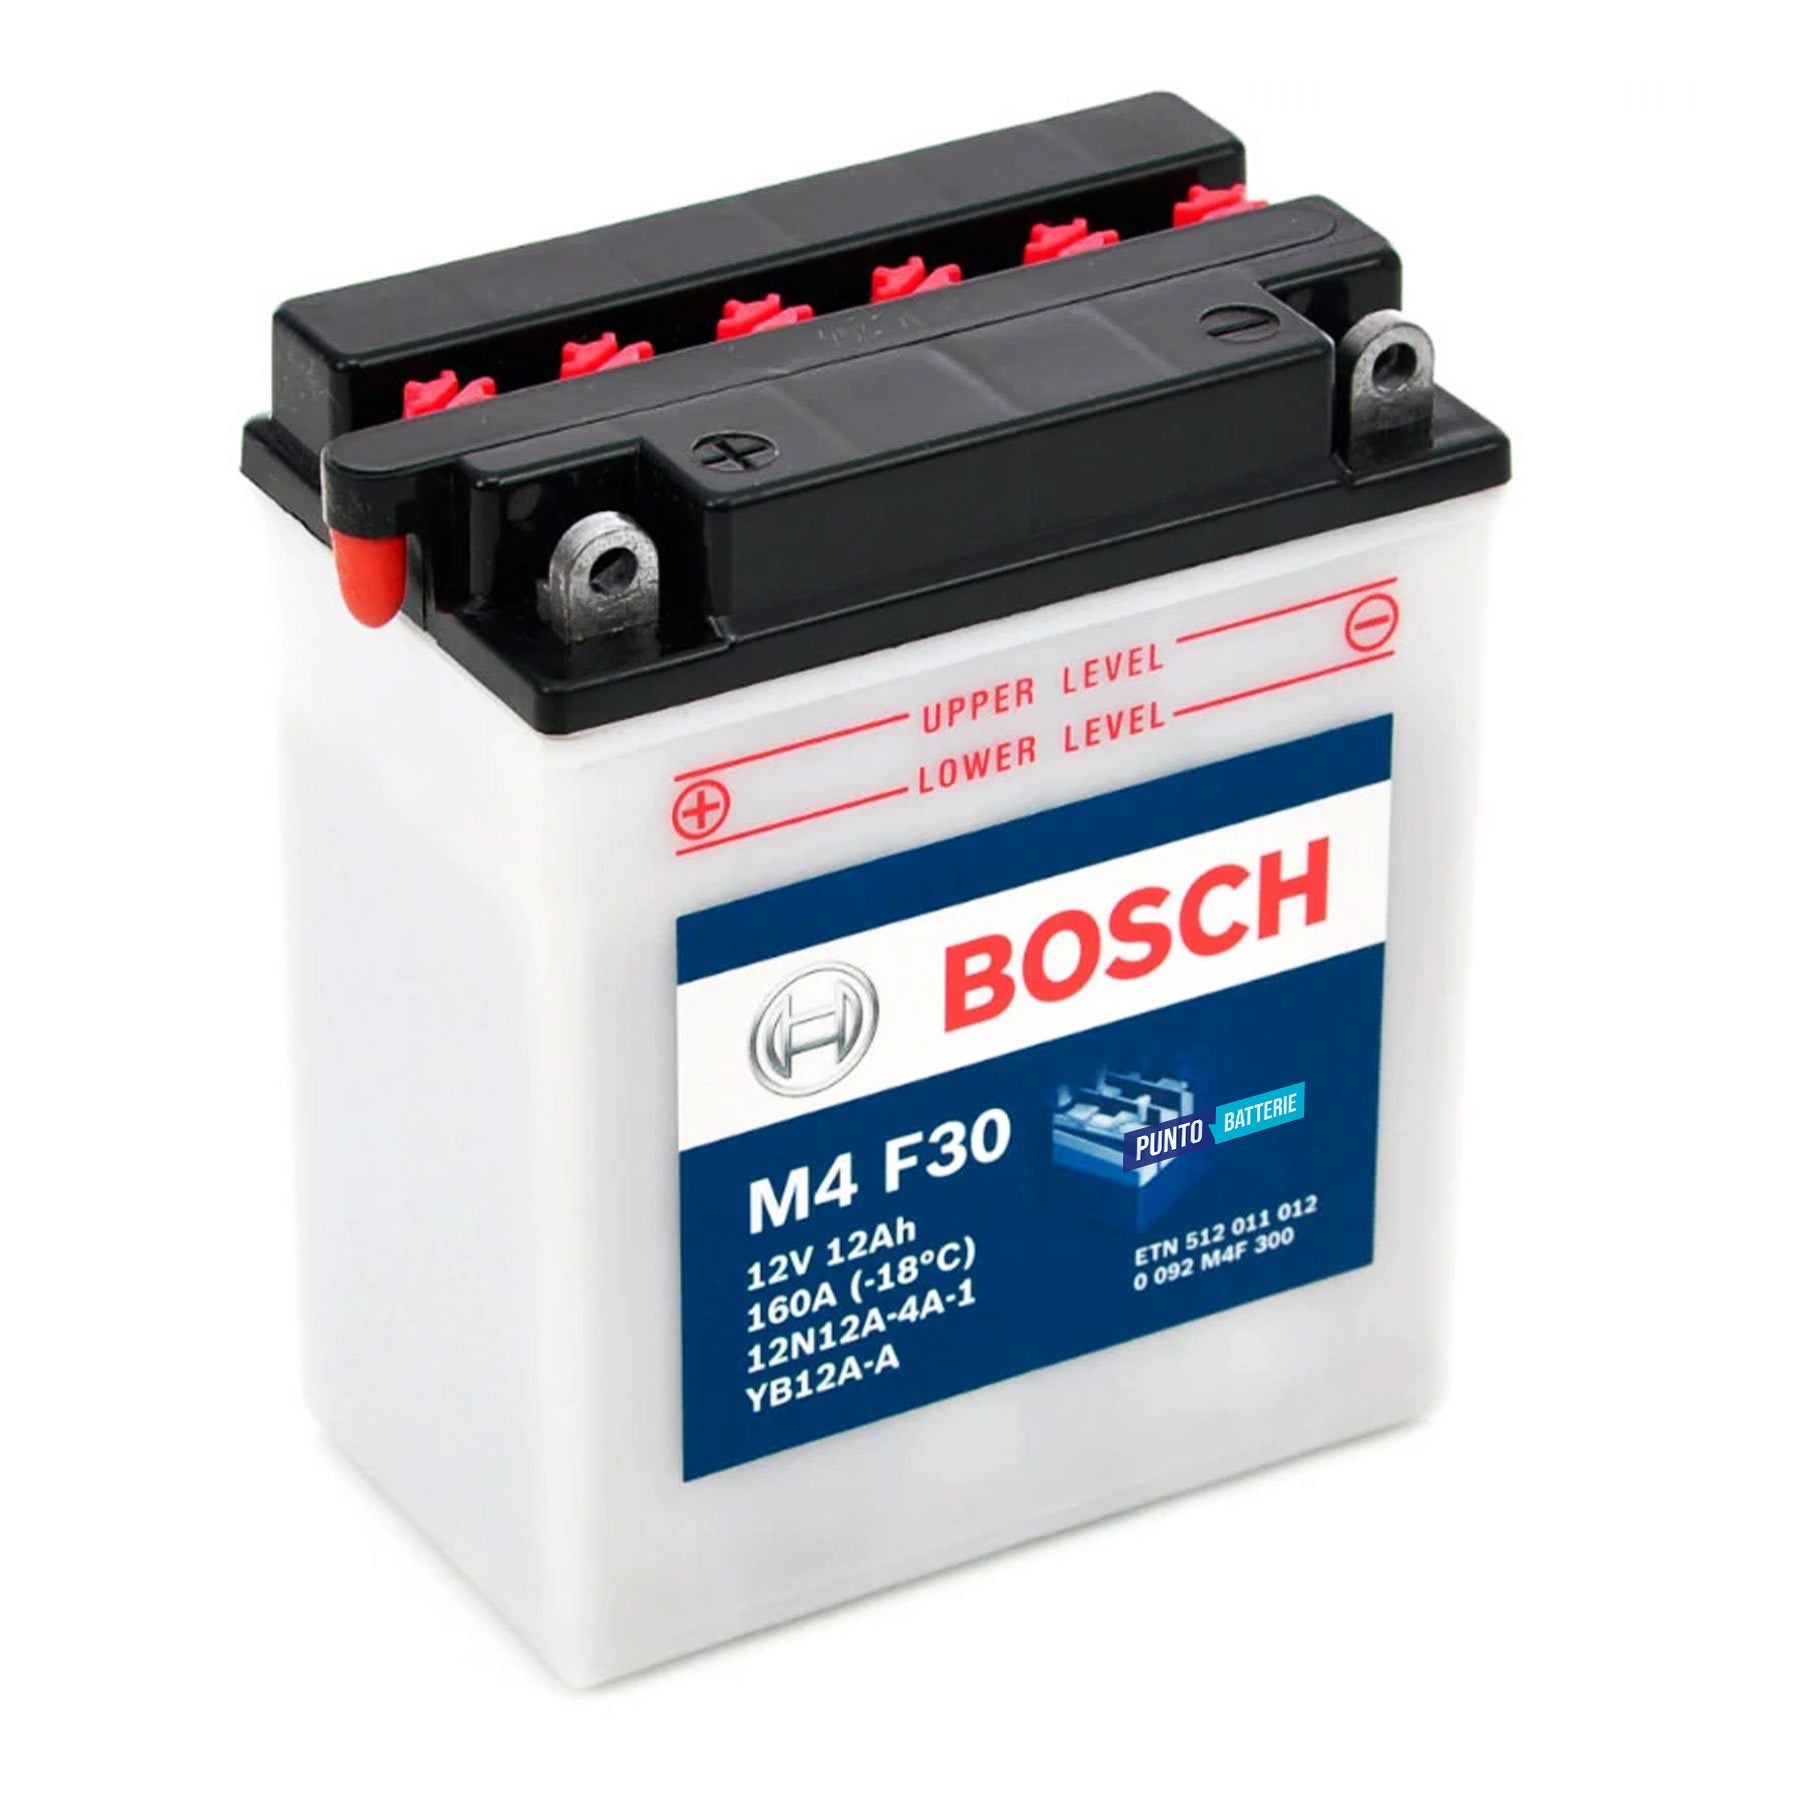 Batteria originale Bosch M4 M4F30, dimensioni 135 x 75 x 133, polo positivo a sinistra, 12 volt, 12 amperora, 160 ampere. Batteria per moto, scooter e powersport.